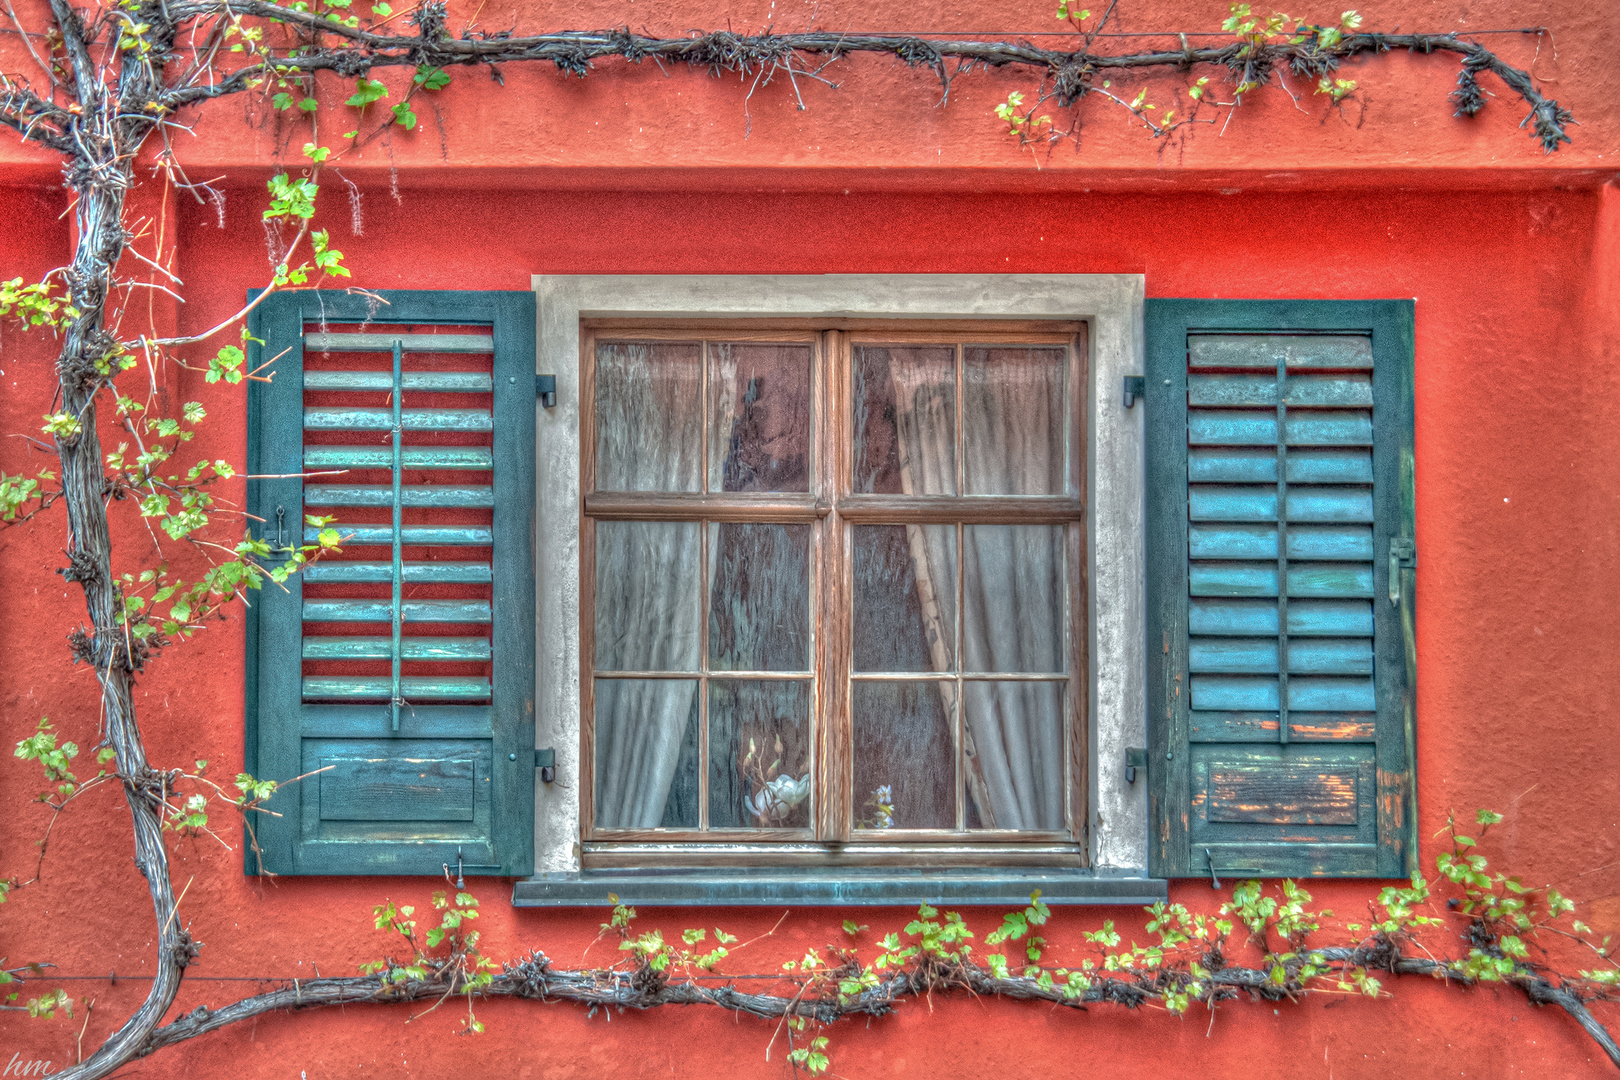 Fenster an der roten Wand